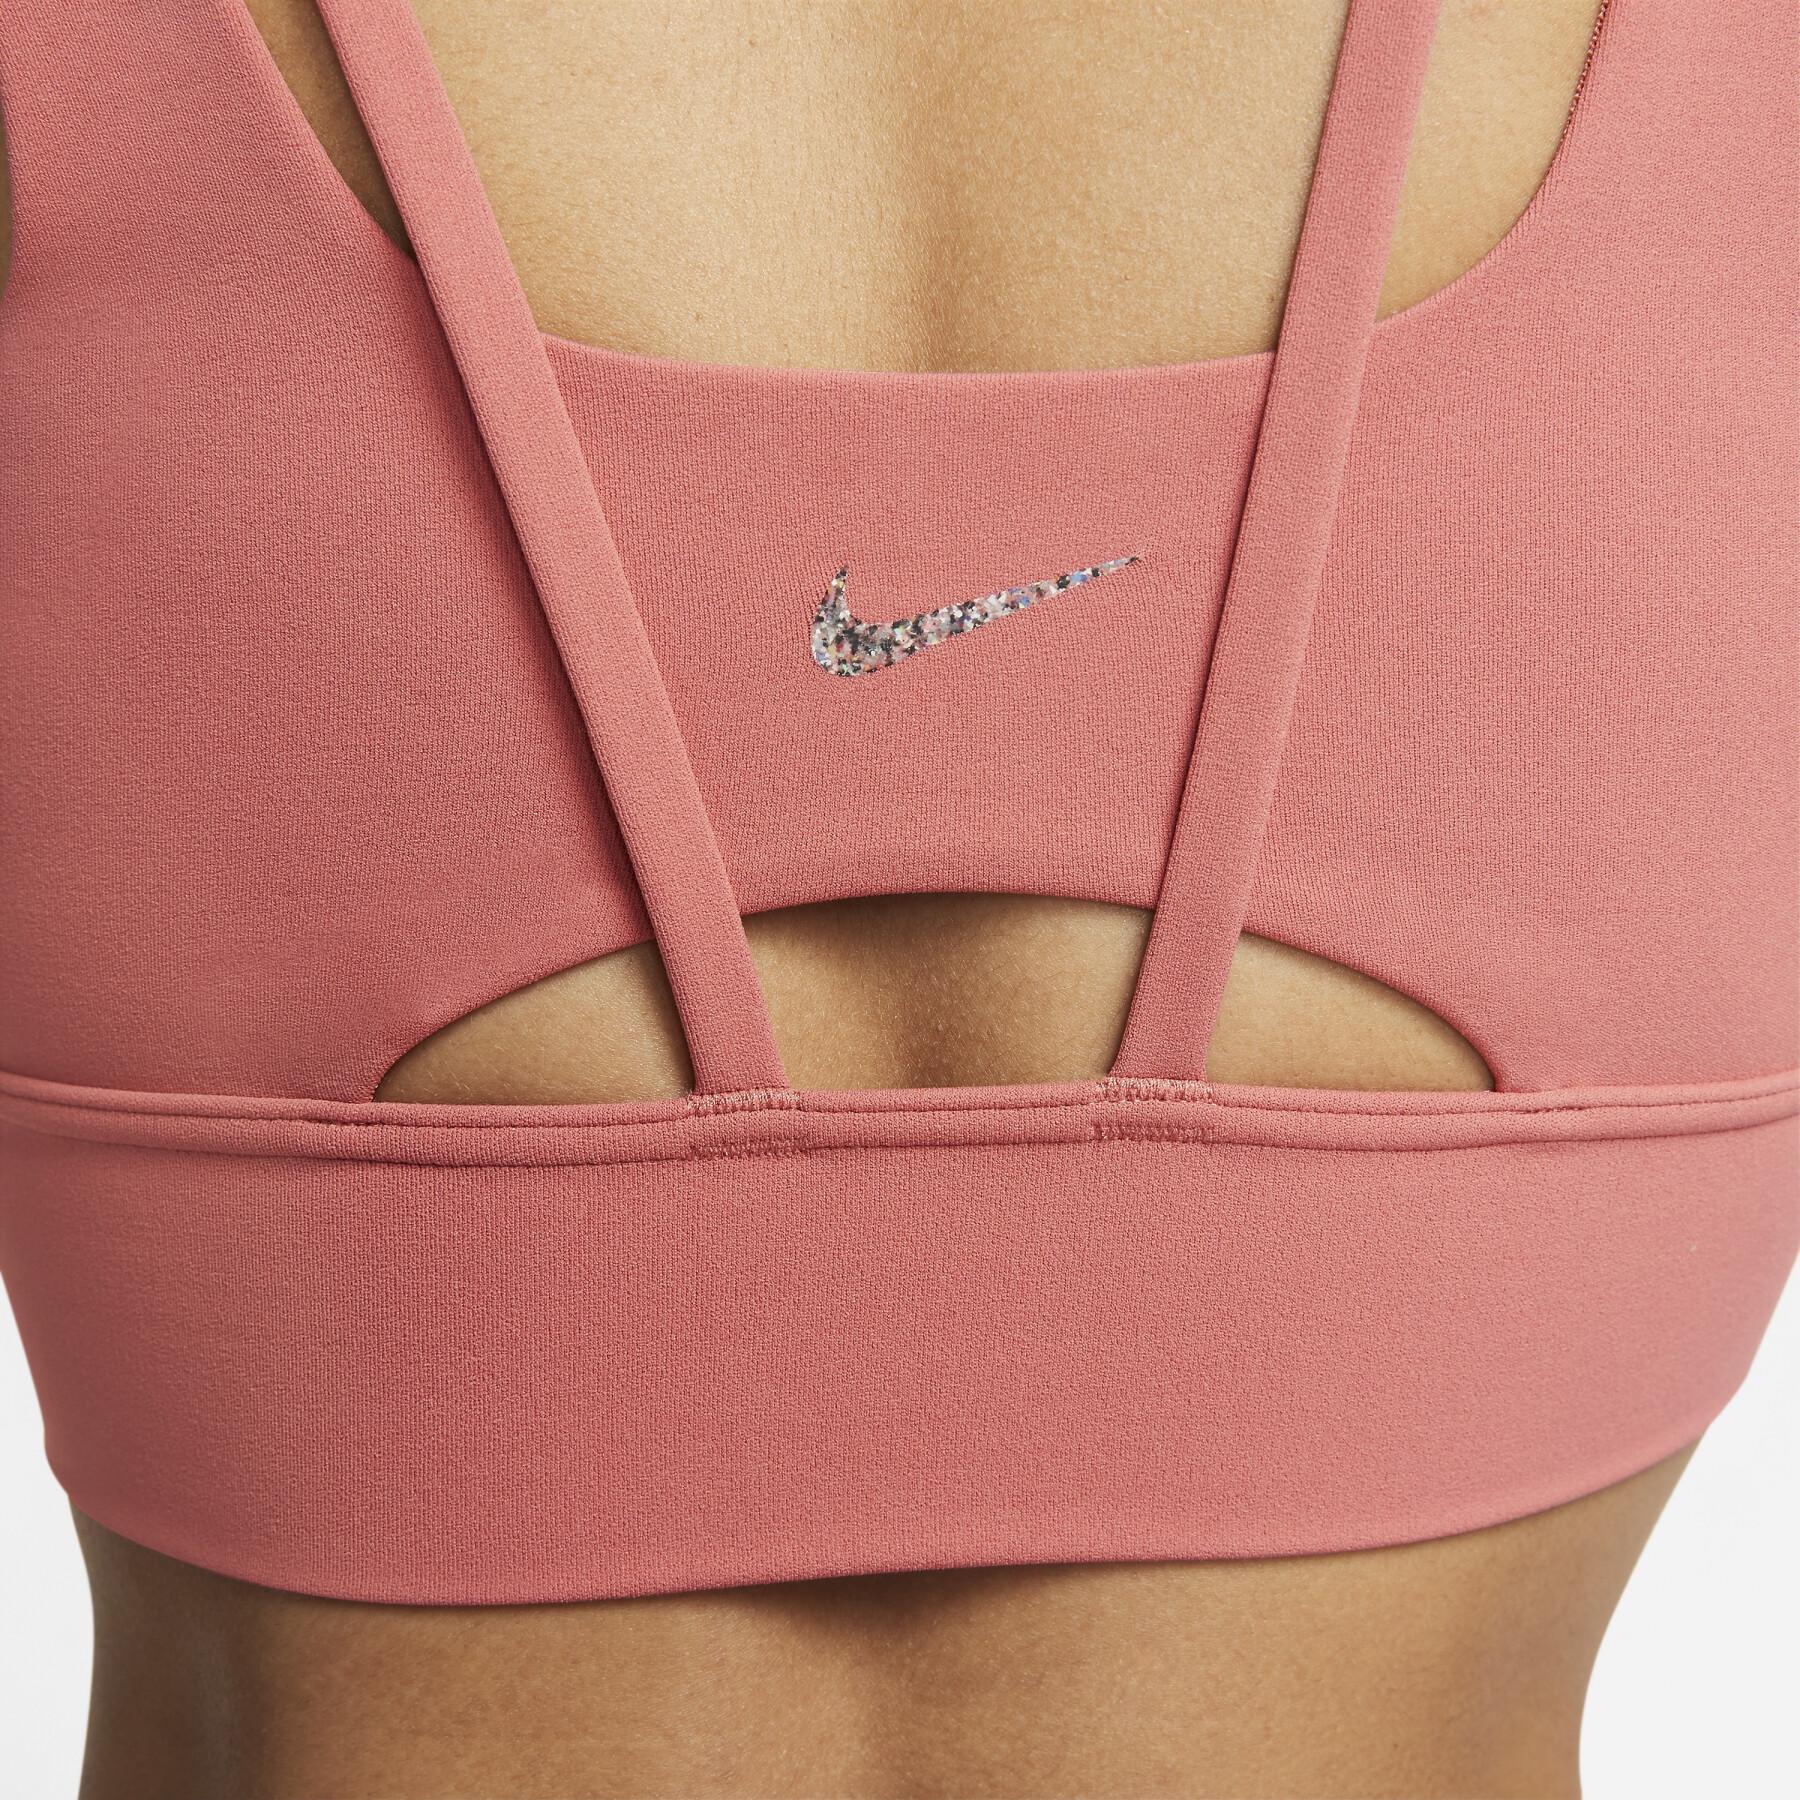 Women's bra Nike Alate Ellipse Longline - Textile - Handball wear